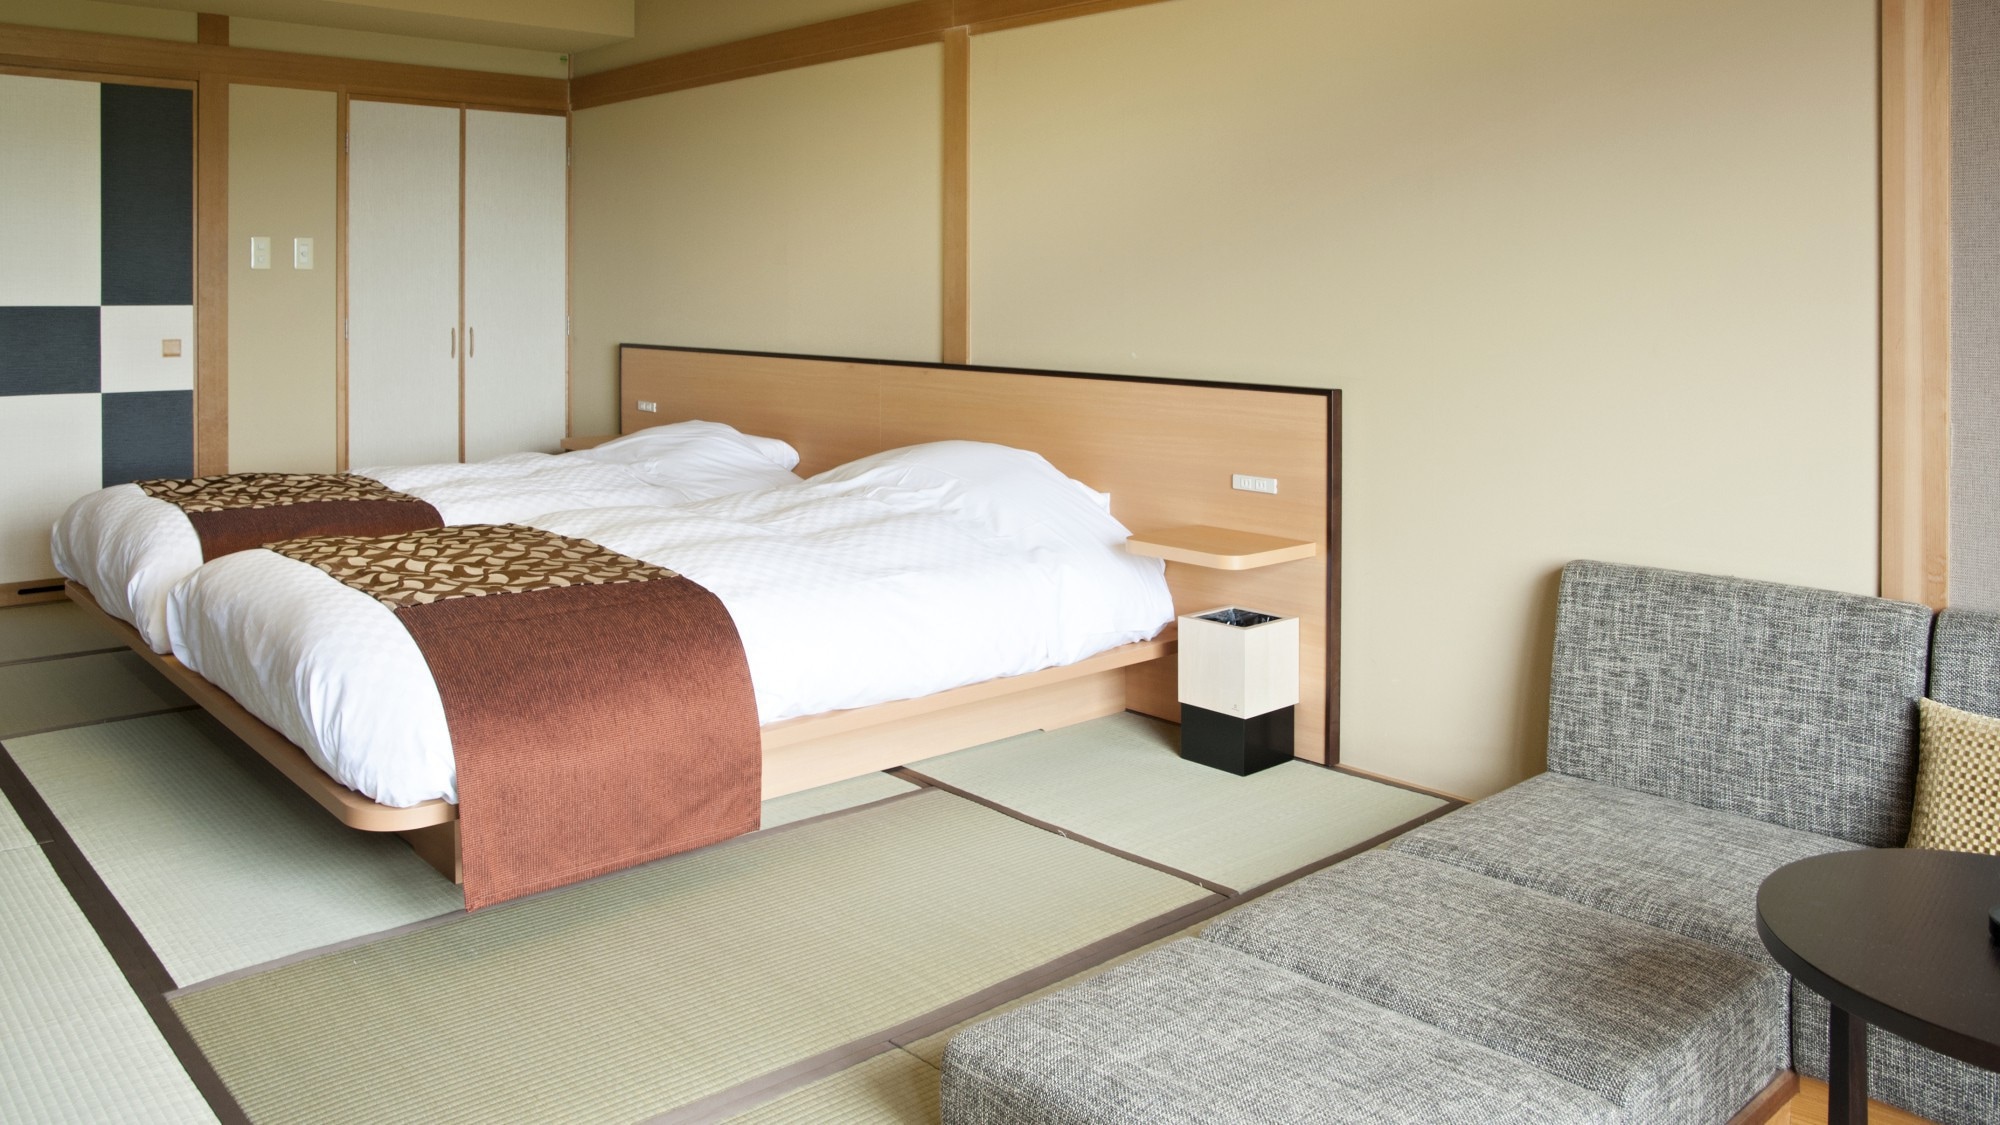 [ริมทะเลสาบ] ห้องเตียงแฝดสไตล์ญี่ปุ่น (มีอ่างอาบน้ำ) / พื้นที่เปิดโล่งพร้อมเสื่อทาทามิที่ผ่อนคลาย (ภาพ)